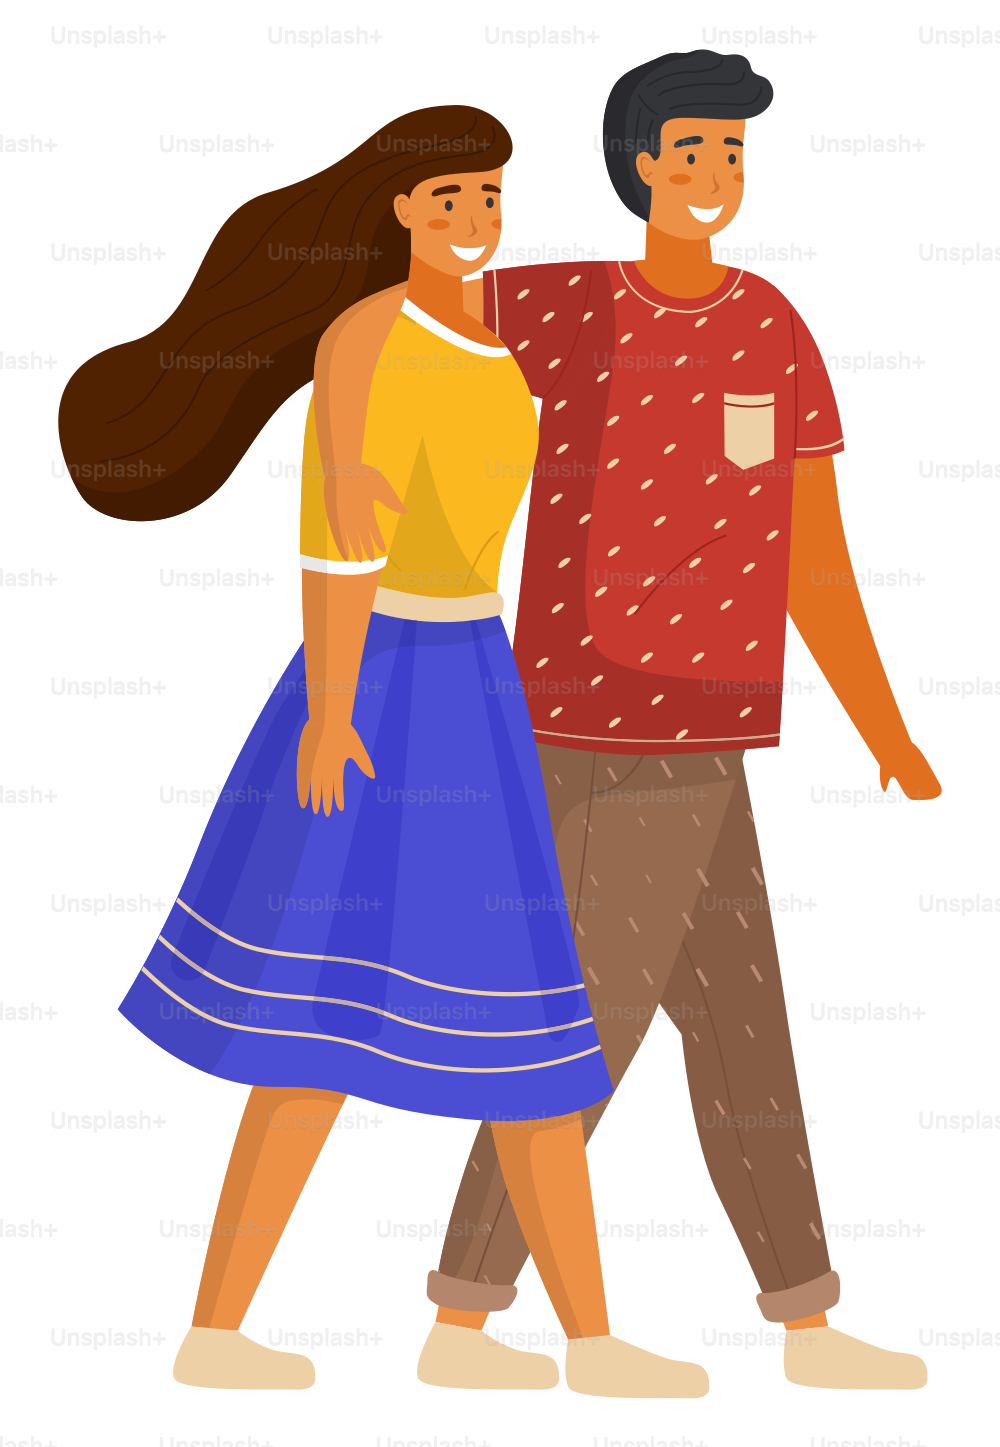 Paar junges Mädchen und Kerl umarmen sich zu Fuß, hübsche Frau in Rock und Hemd, Mann in T-Shirt und Hose, Menschen in Freizeitkleidung, isolierte stilvolle flache Zeichentrickfiguren, Porträt oder Avatar